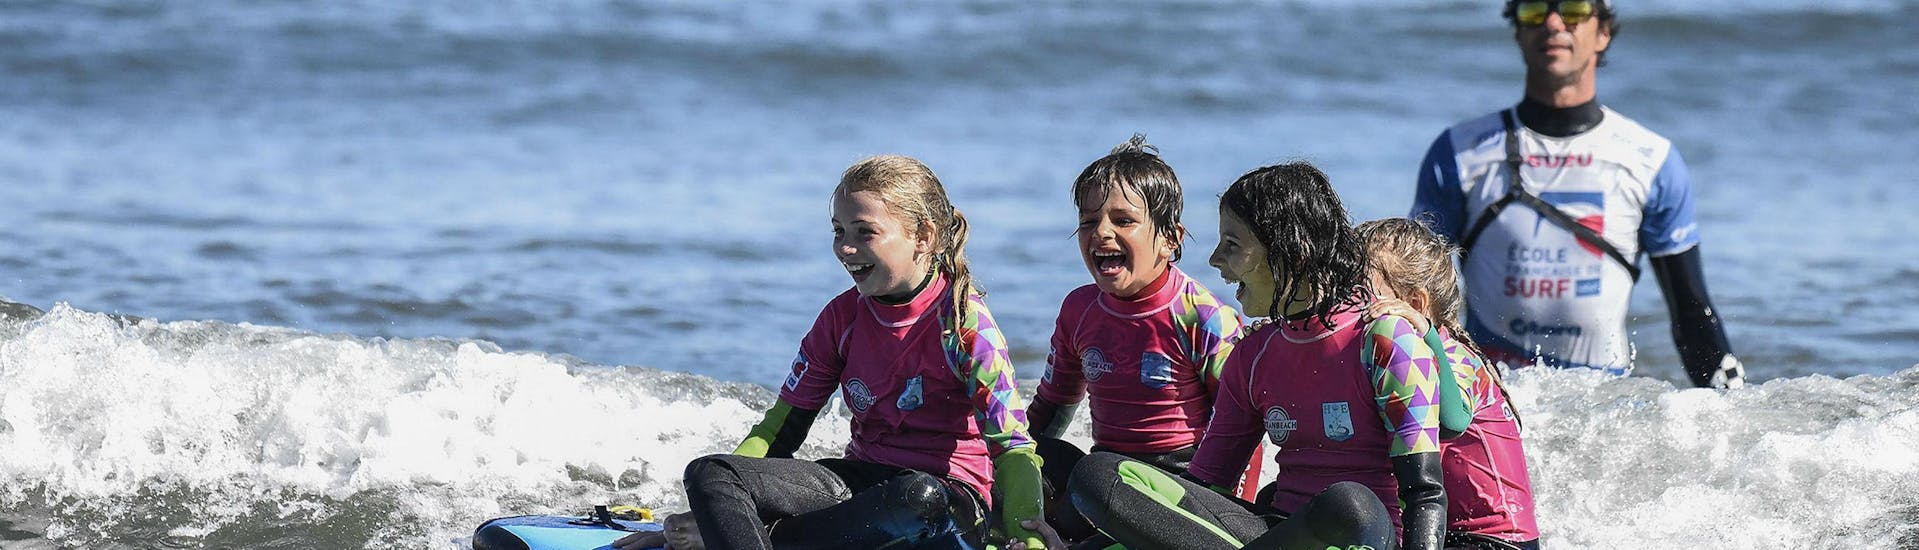 4 Mädchen auf dem Surfbrett für eine Surfstunde in der Nähe Eures Lehrers am Ozeanstrand in Hendaye.